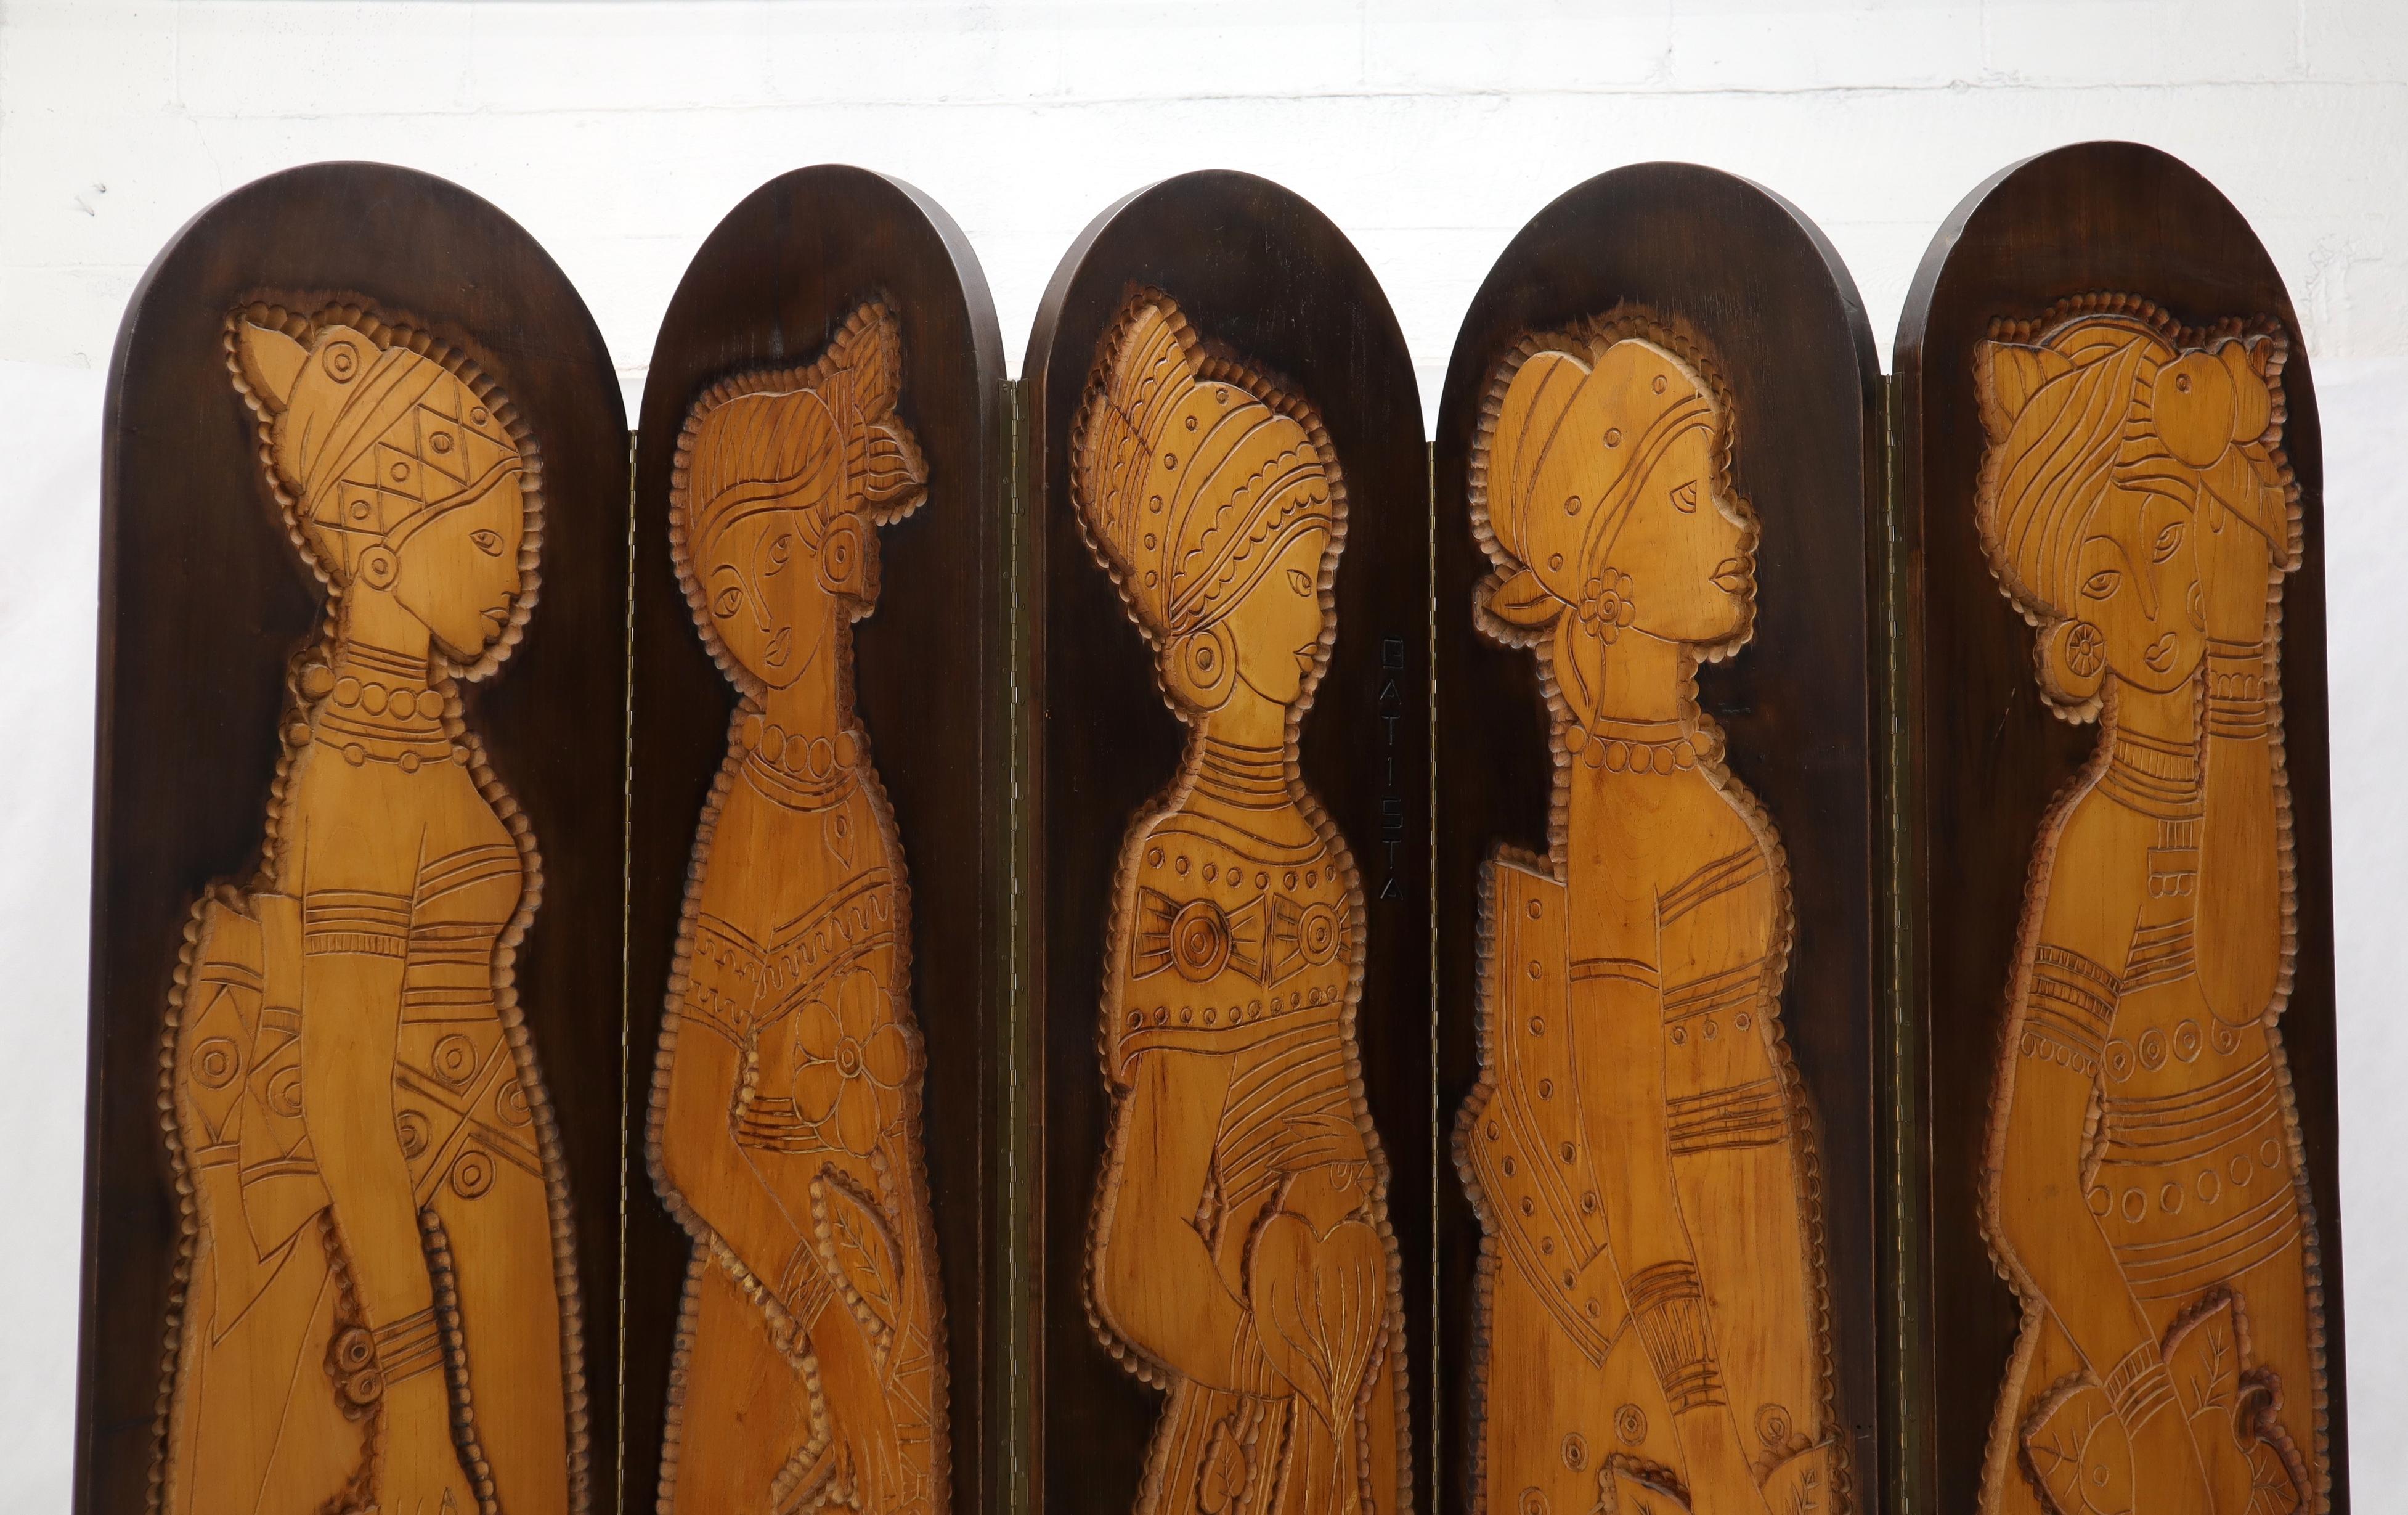 Beeindruckende Arts & Crafts Mid-Century Modern Dekor gebranntes Holz Raumteiler Bildschirm.